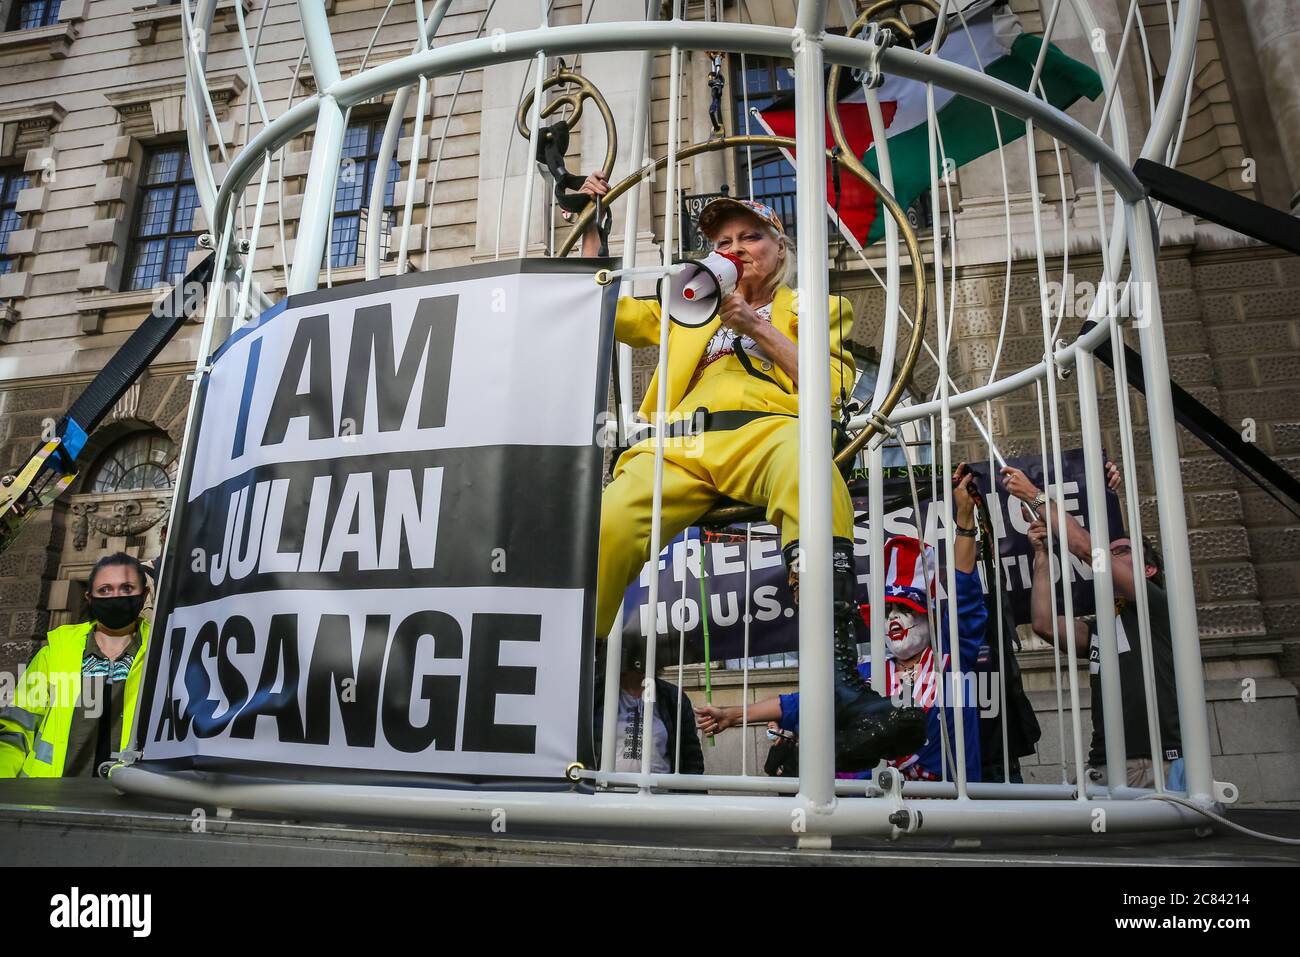 Londres, Reino Unido, 21 de julio de 2020. Dame Vivienne Westwood está enjaezada en una jaula gigante con un signo de "Yo soy Julian Assange", y suspendido 10 pies en el aire frente a la Corte Penal Central de Old Bailey, en protesta por la extradición de Julian Assange por los Estados Unidos. Westwood está vestido con un traje de pantalón amarillo, que enfigura la metáfora de la mina de carbón de Canarias, para ilustrar que Assange está siendo sacrificado. Más tarde se presenta frente al Viejo Bailey con su mensaje. Crédito: Imageplotter/Alamy Live News Foto de stock